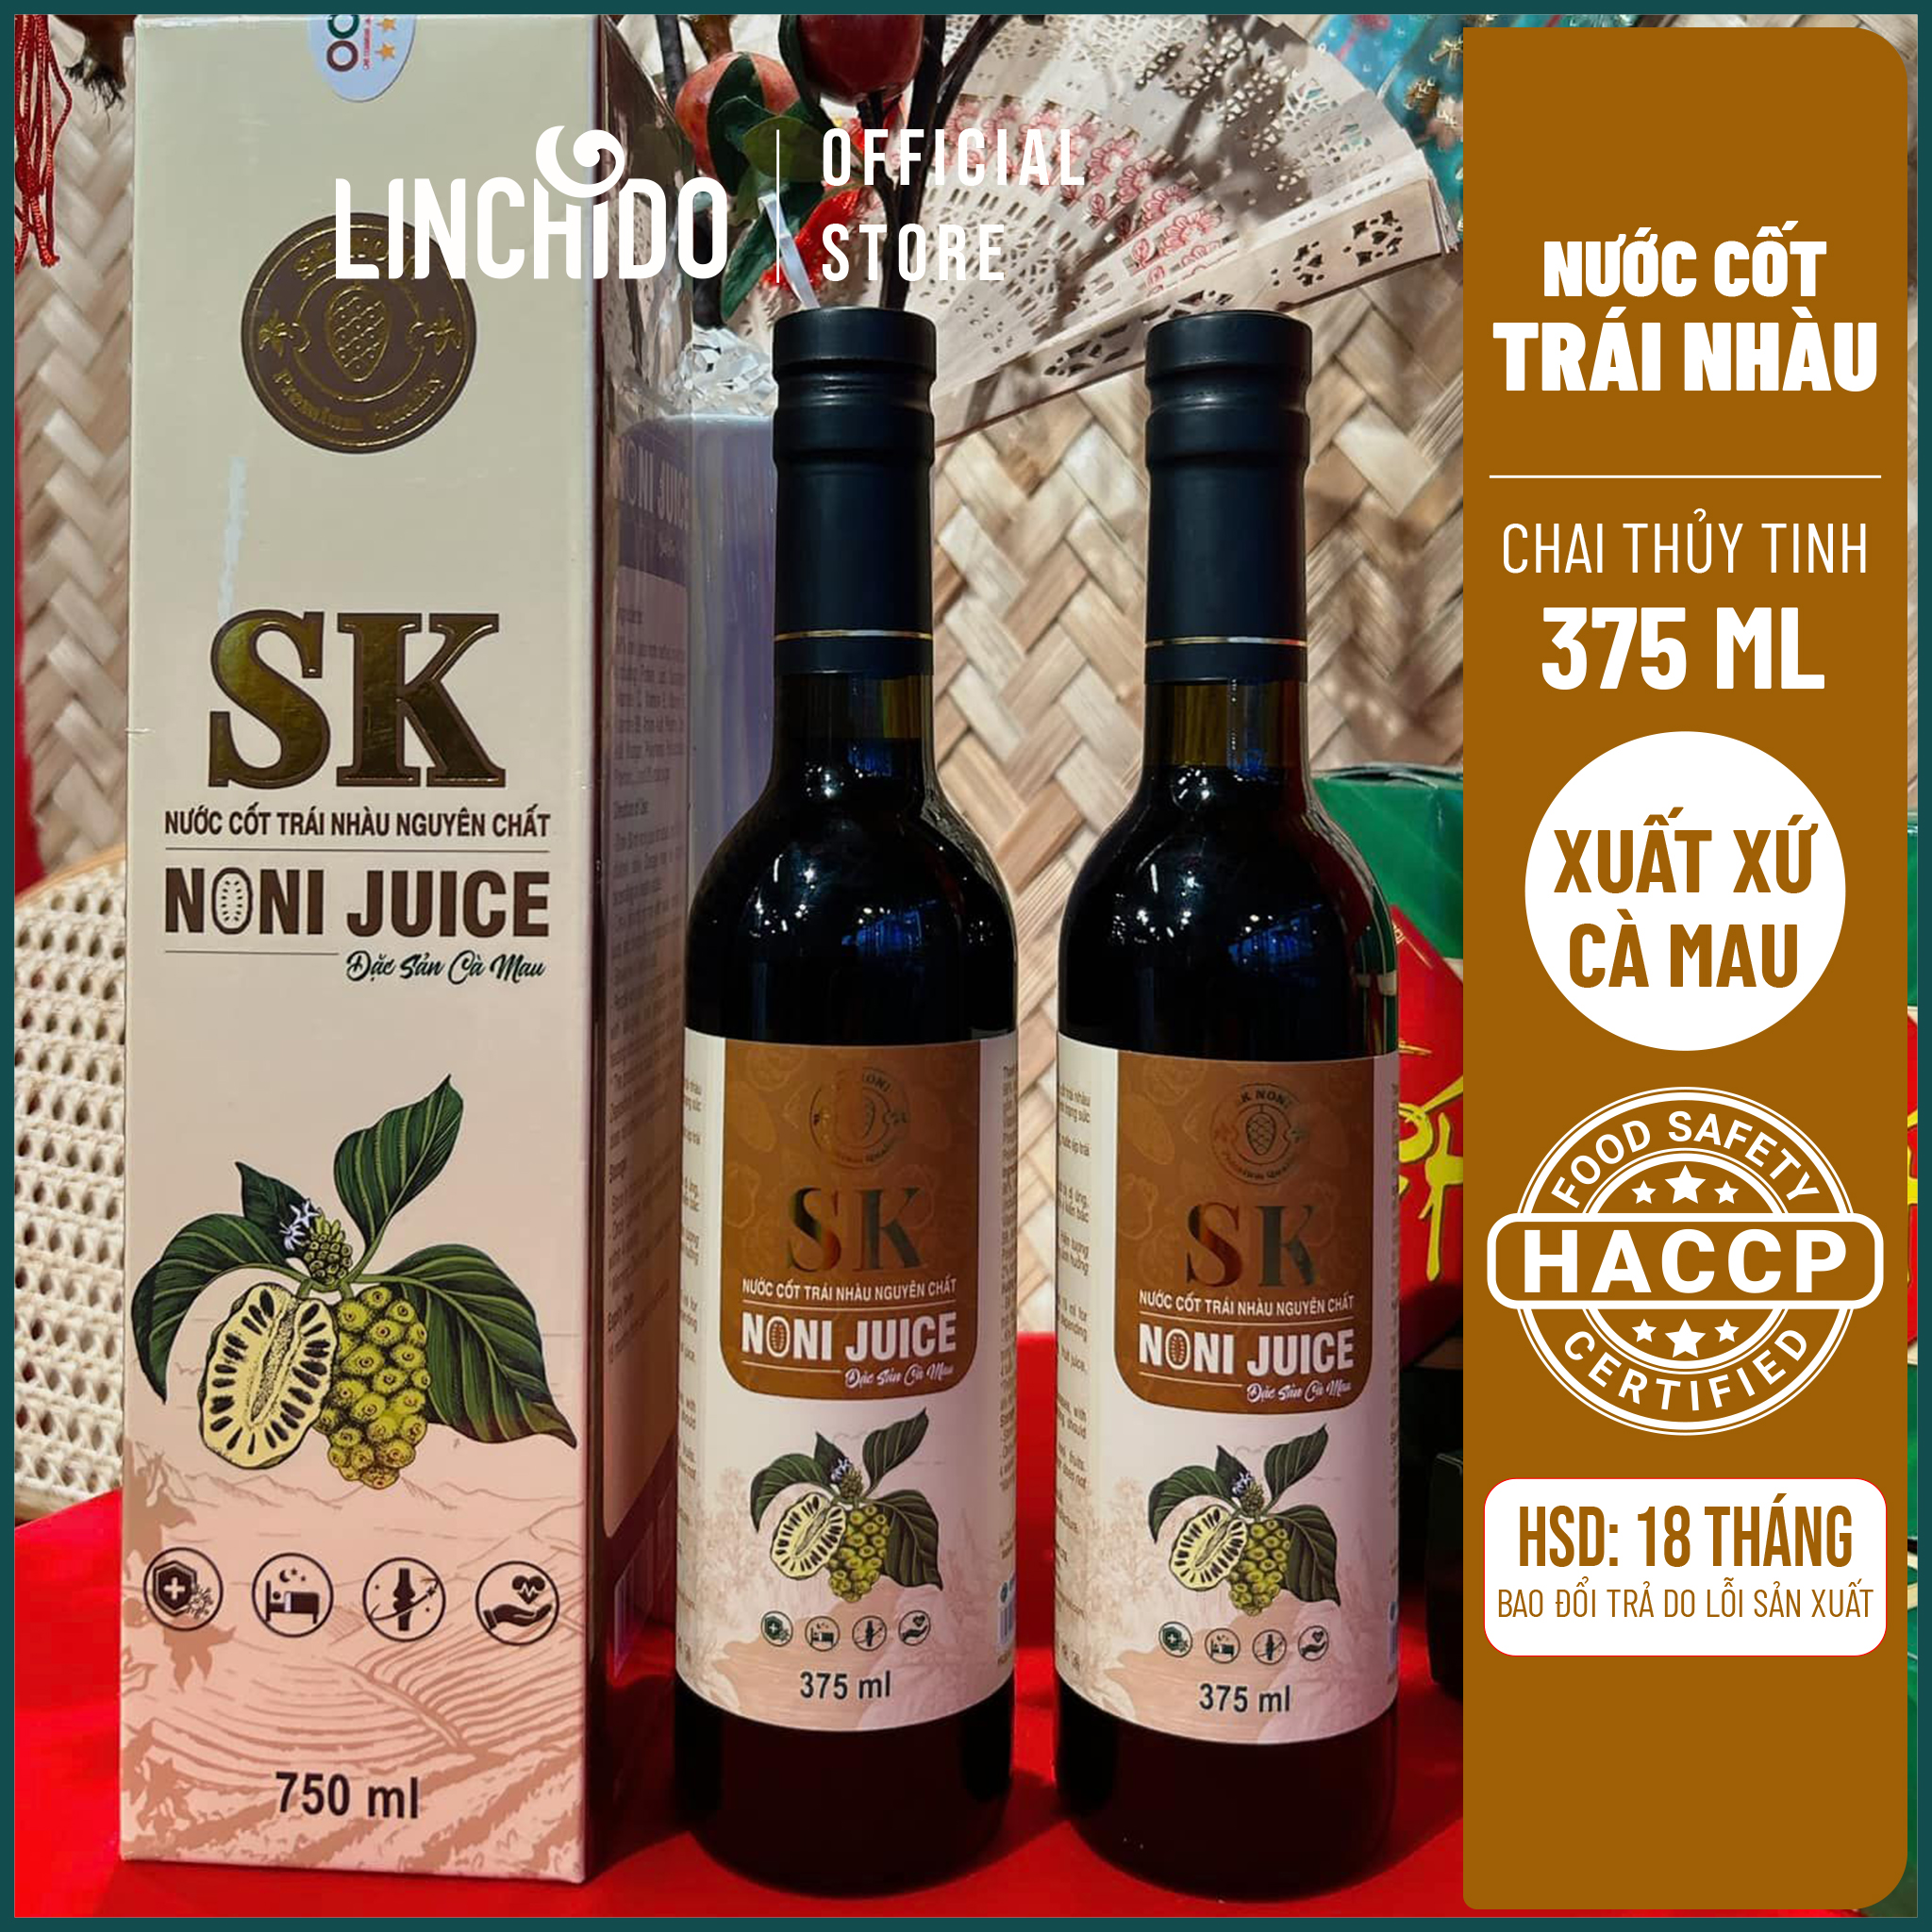 Nước Cốt Trái Nhàu Tươi Nguyên Chất Tách Mùi 375 ML- SK Noni Juice Premium